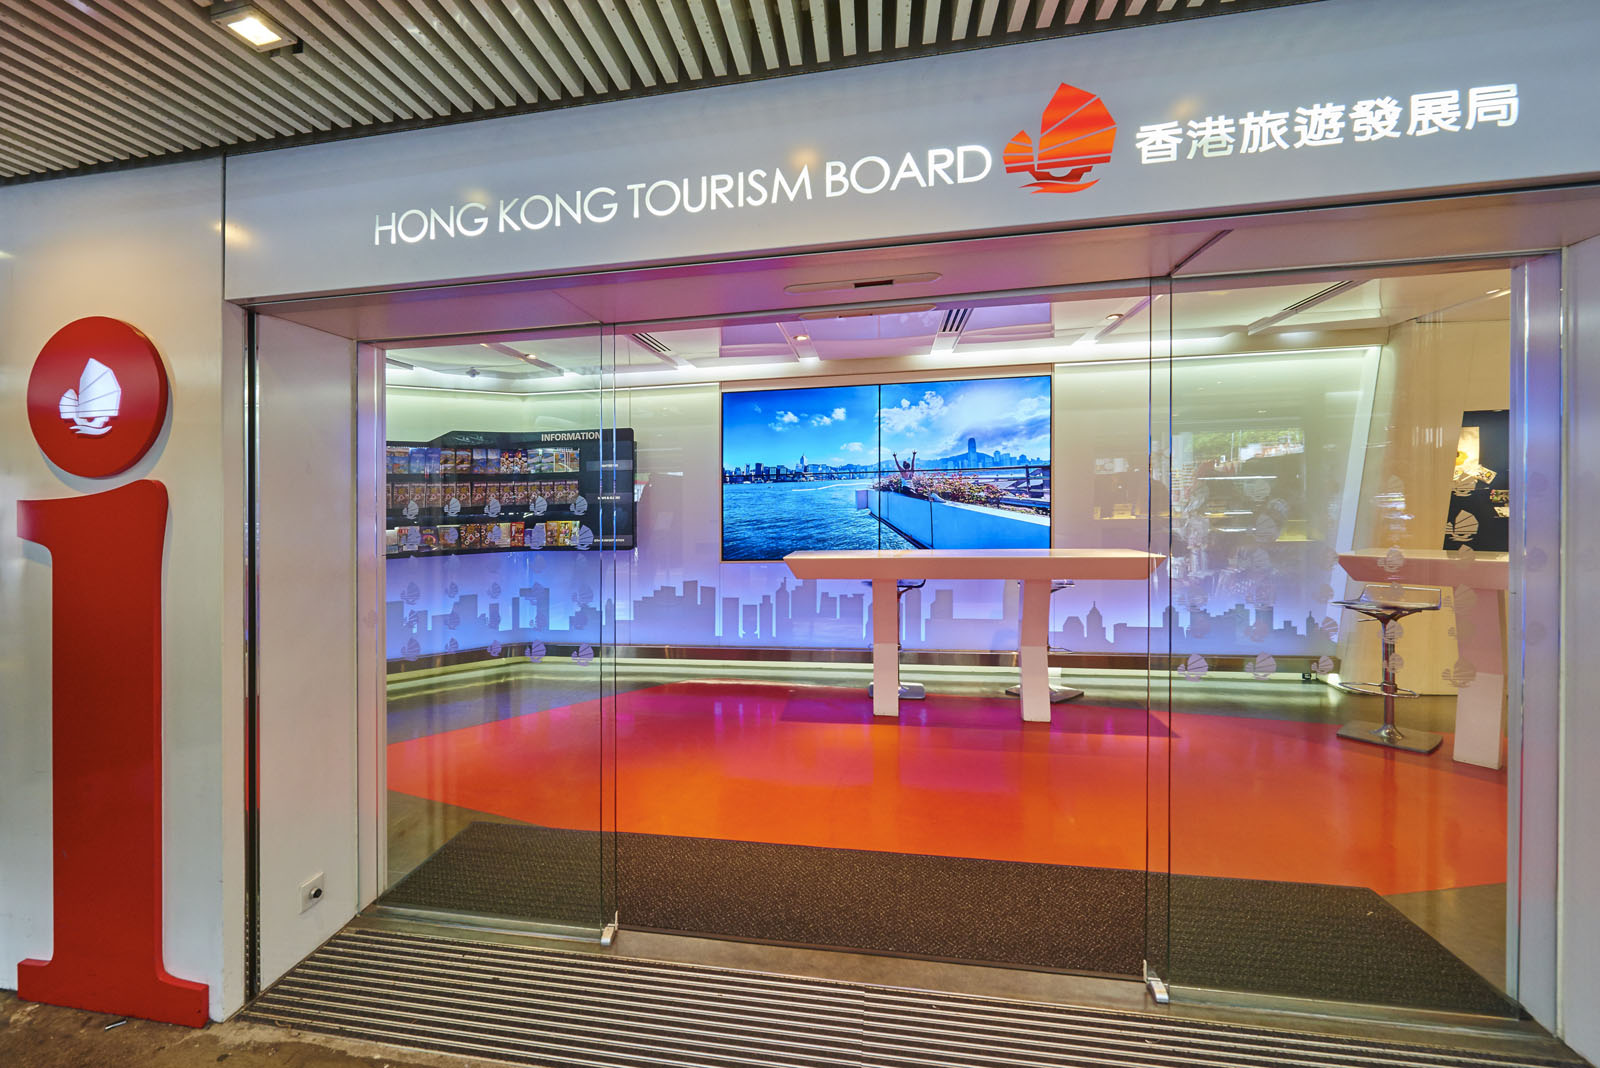 相片 1: 香港旅遊發展局旅客諮詢中心(尖沙咀)